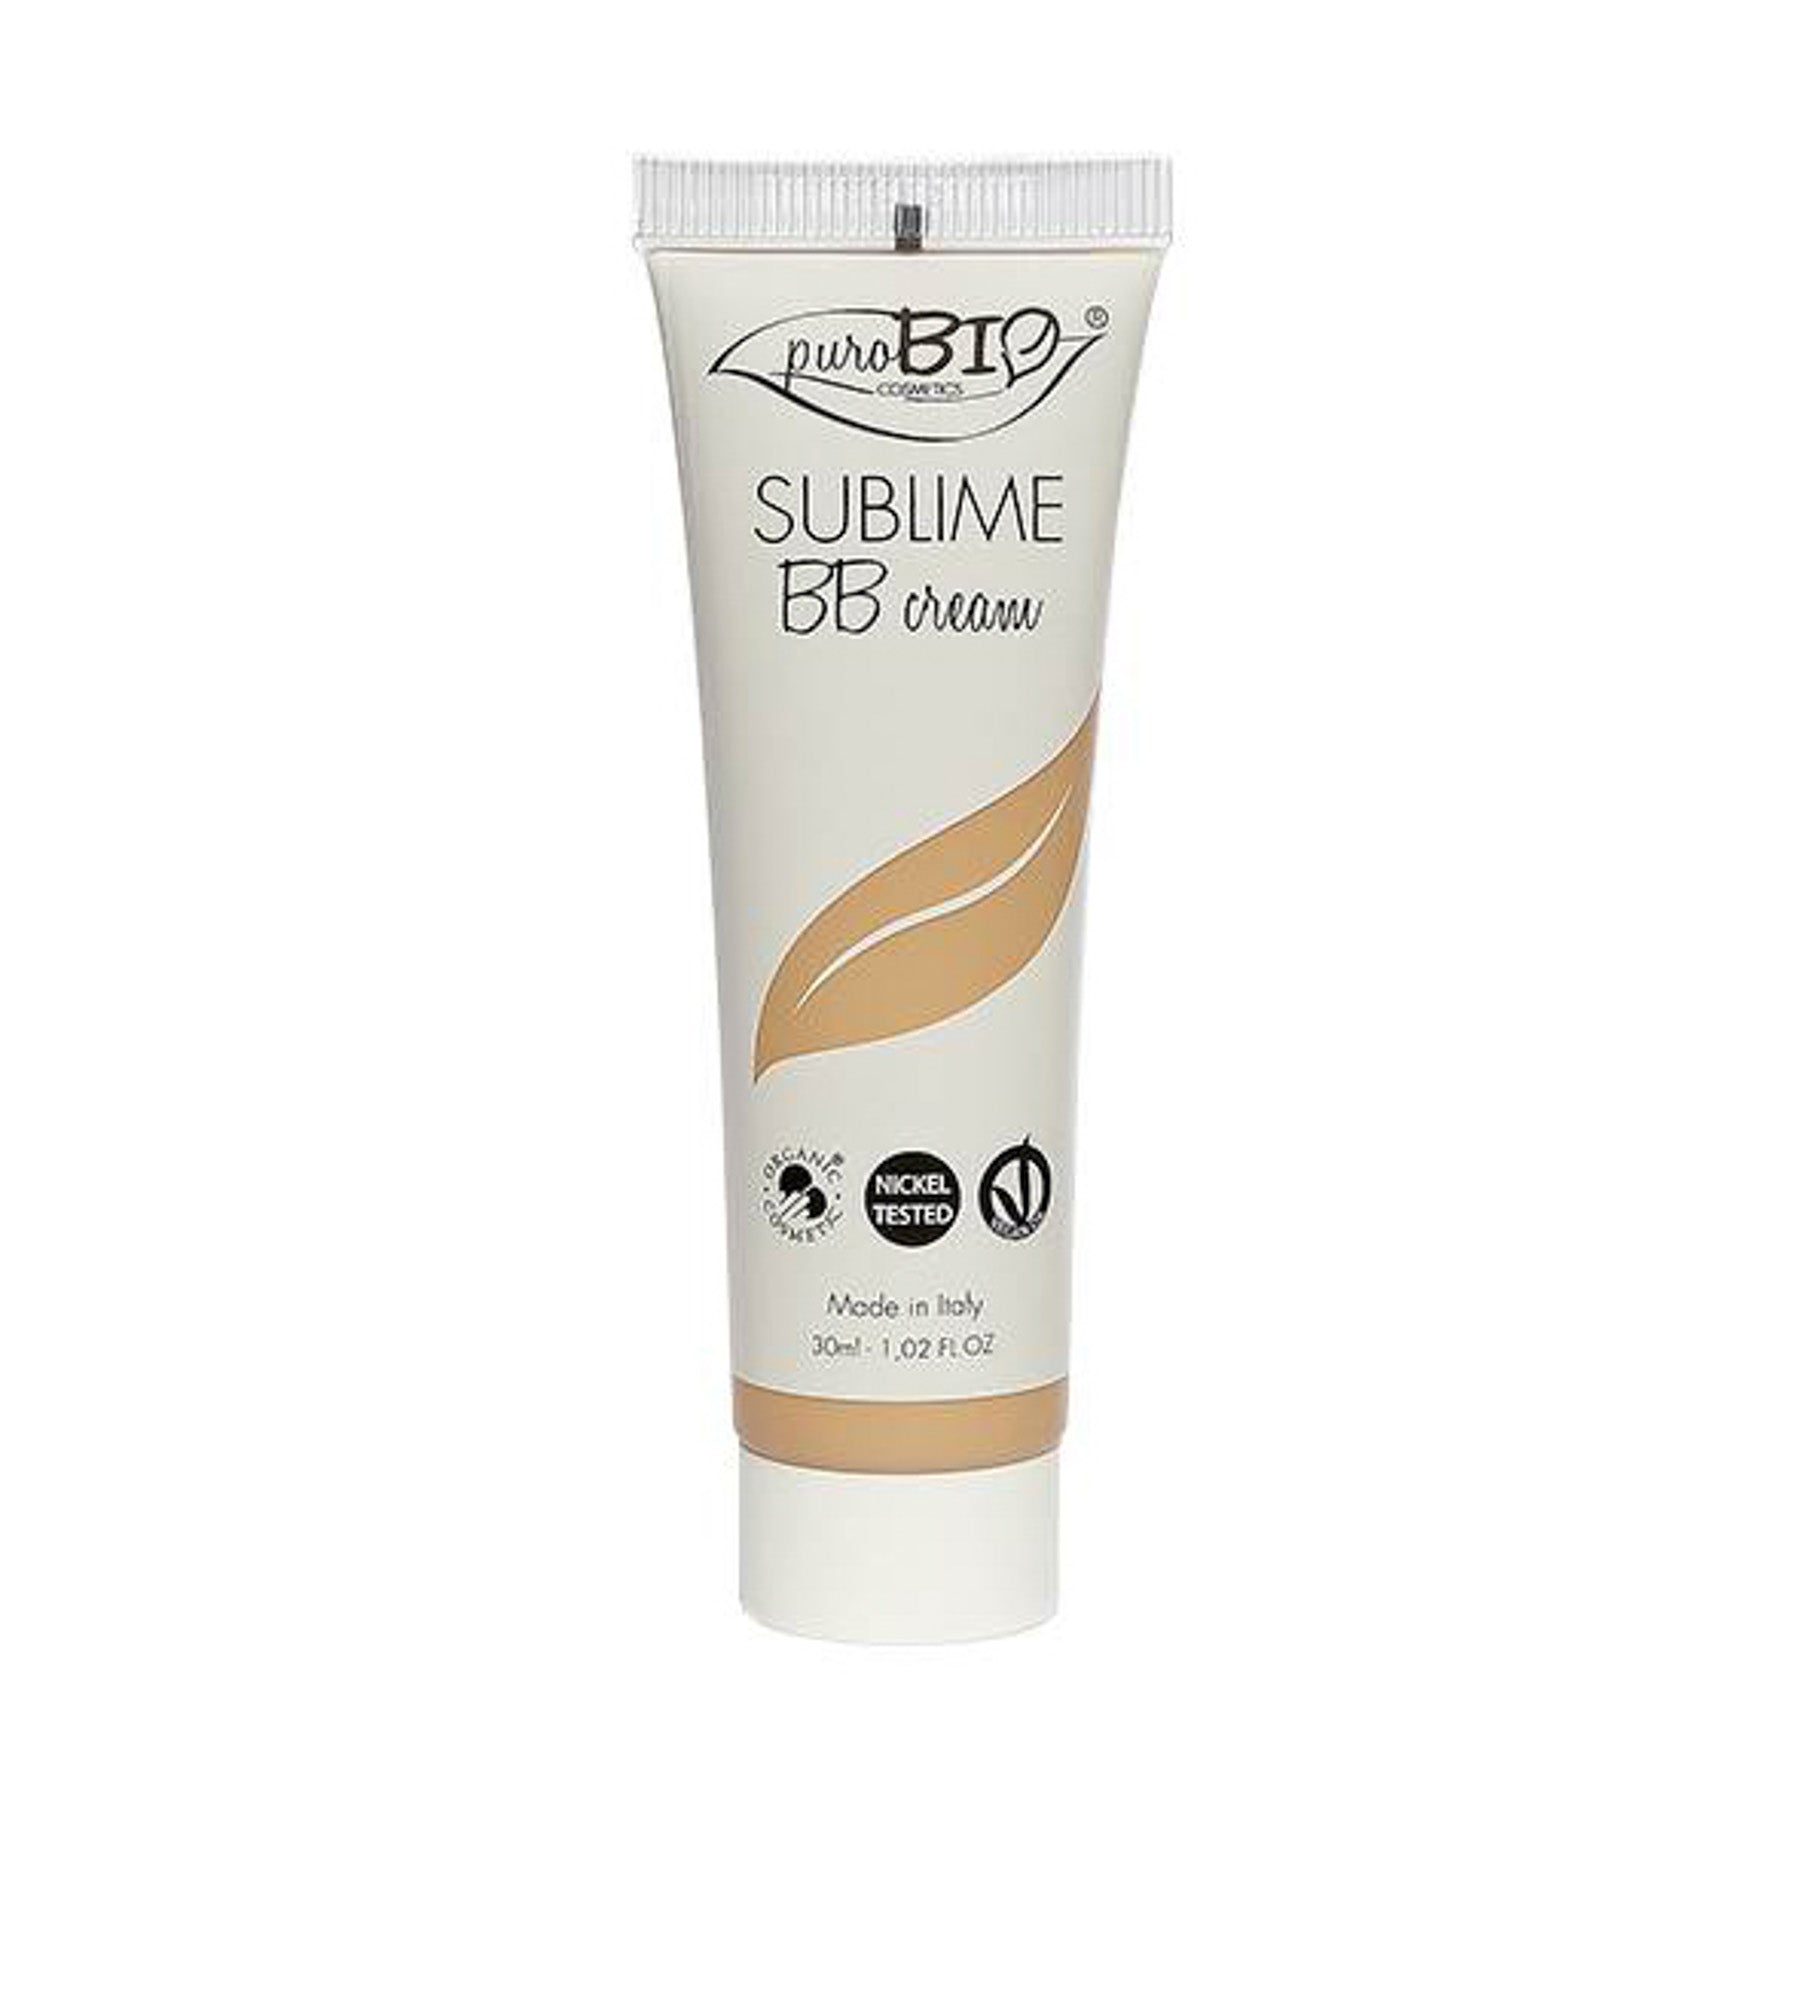 Sublime BB cream-Purobio